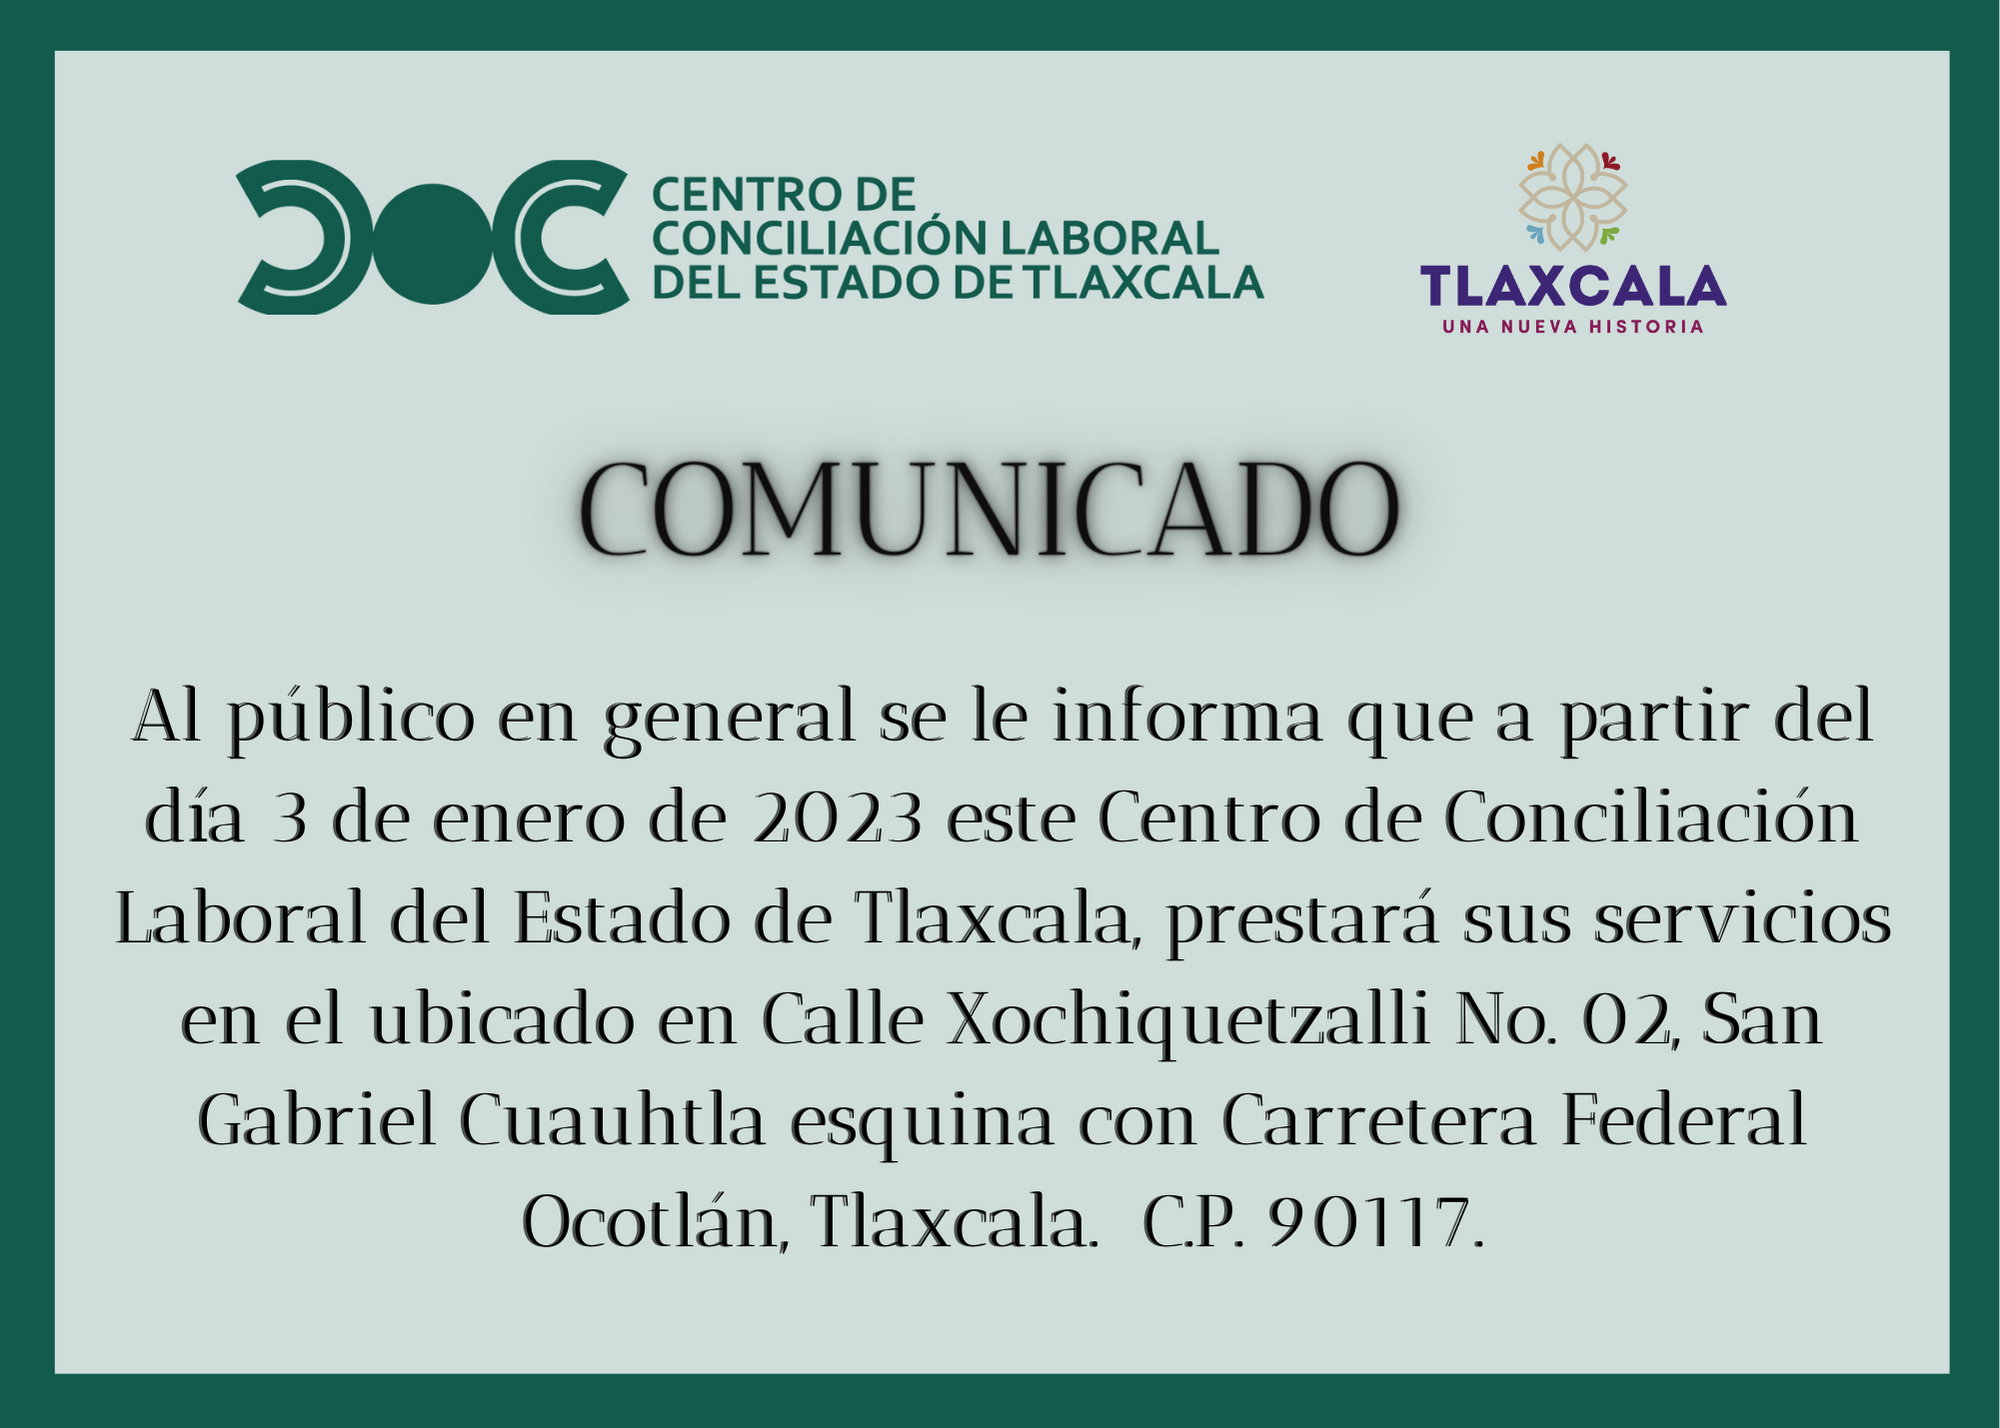 Centro de Conciliación Laboral del Estado de Tlaxcala